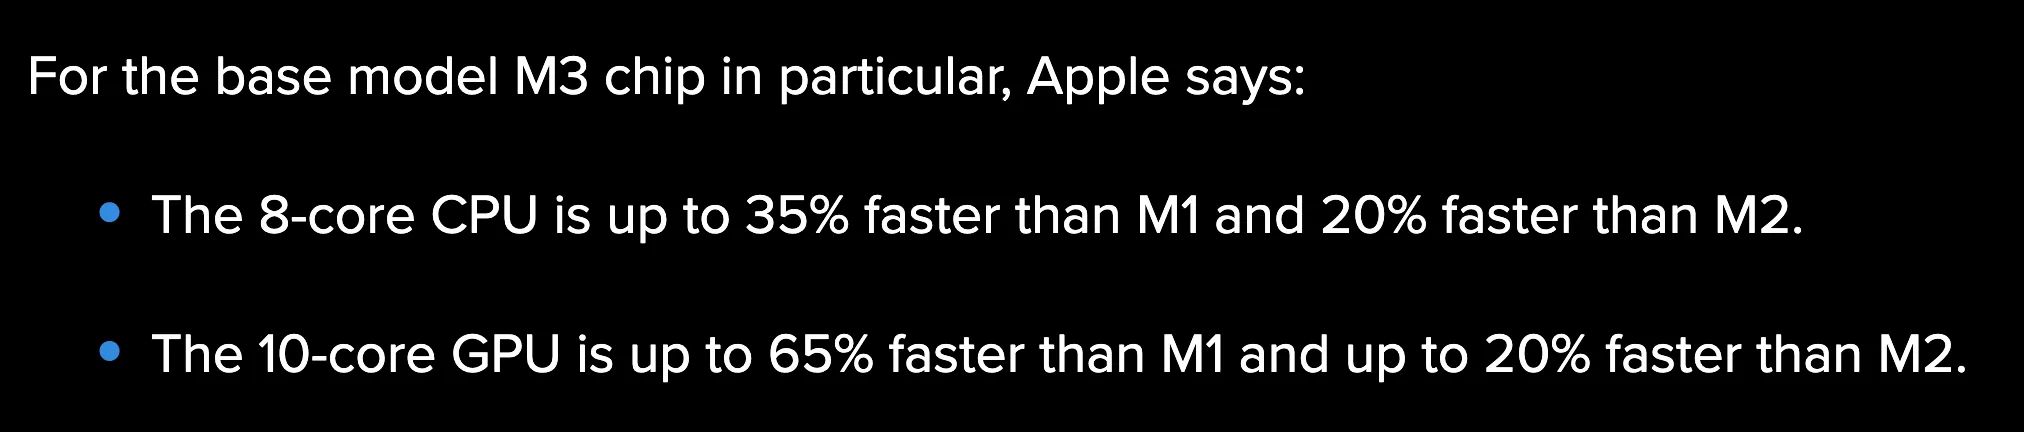 m3 칩 성능 향상 비교 수치